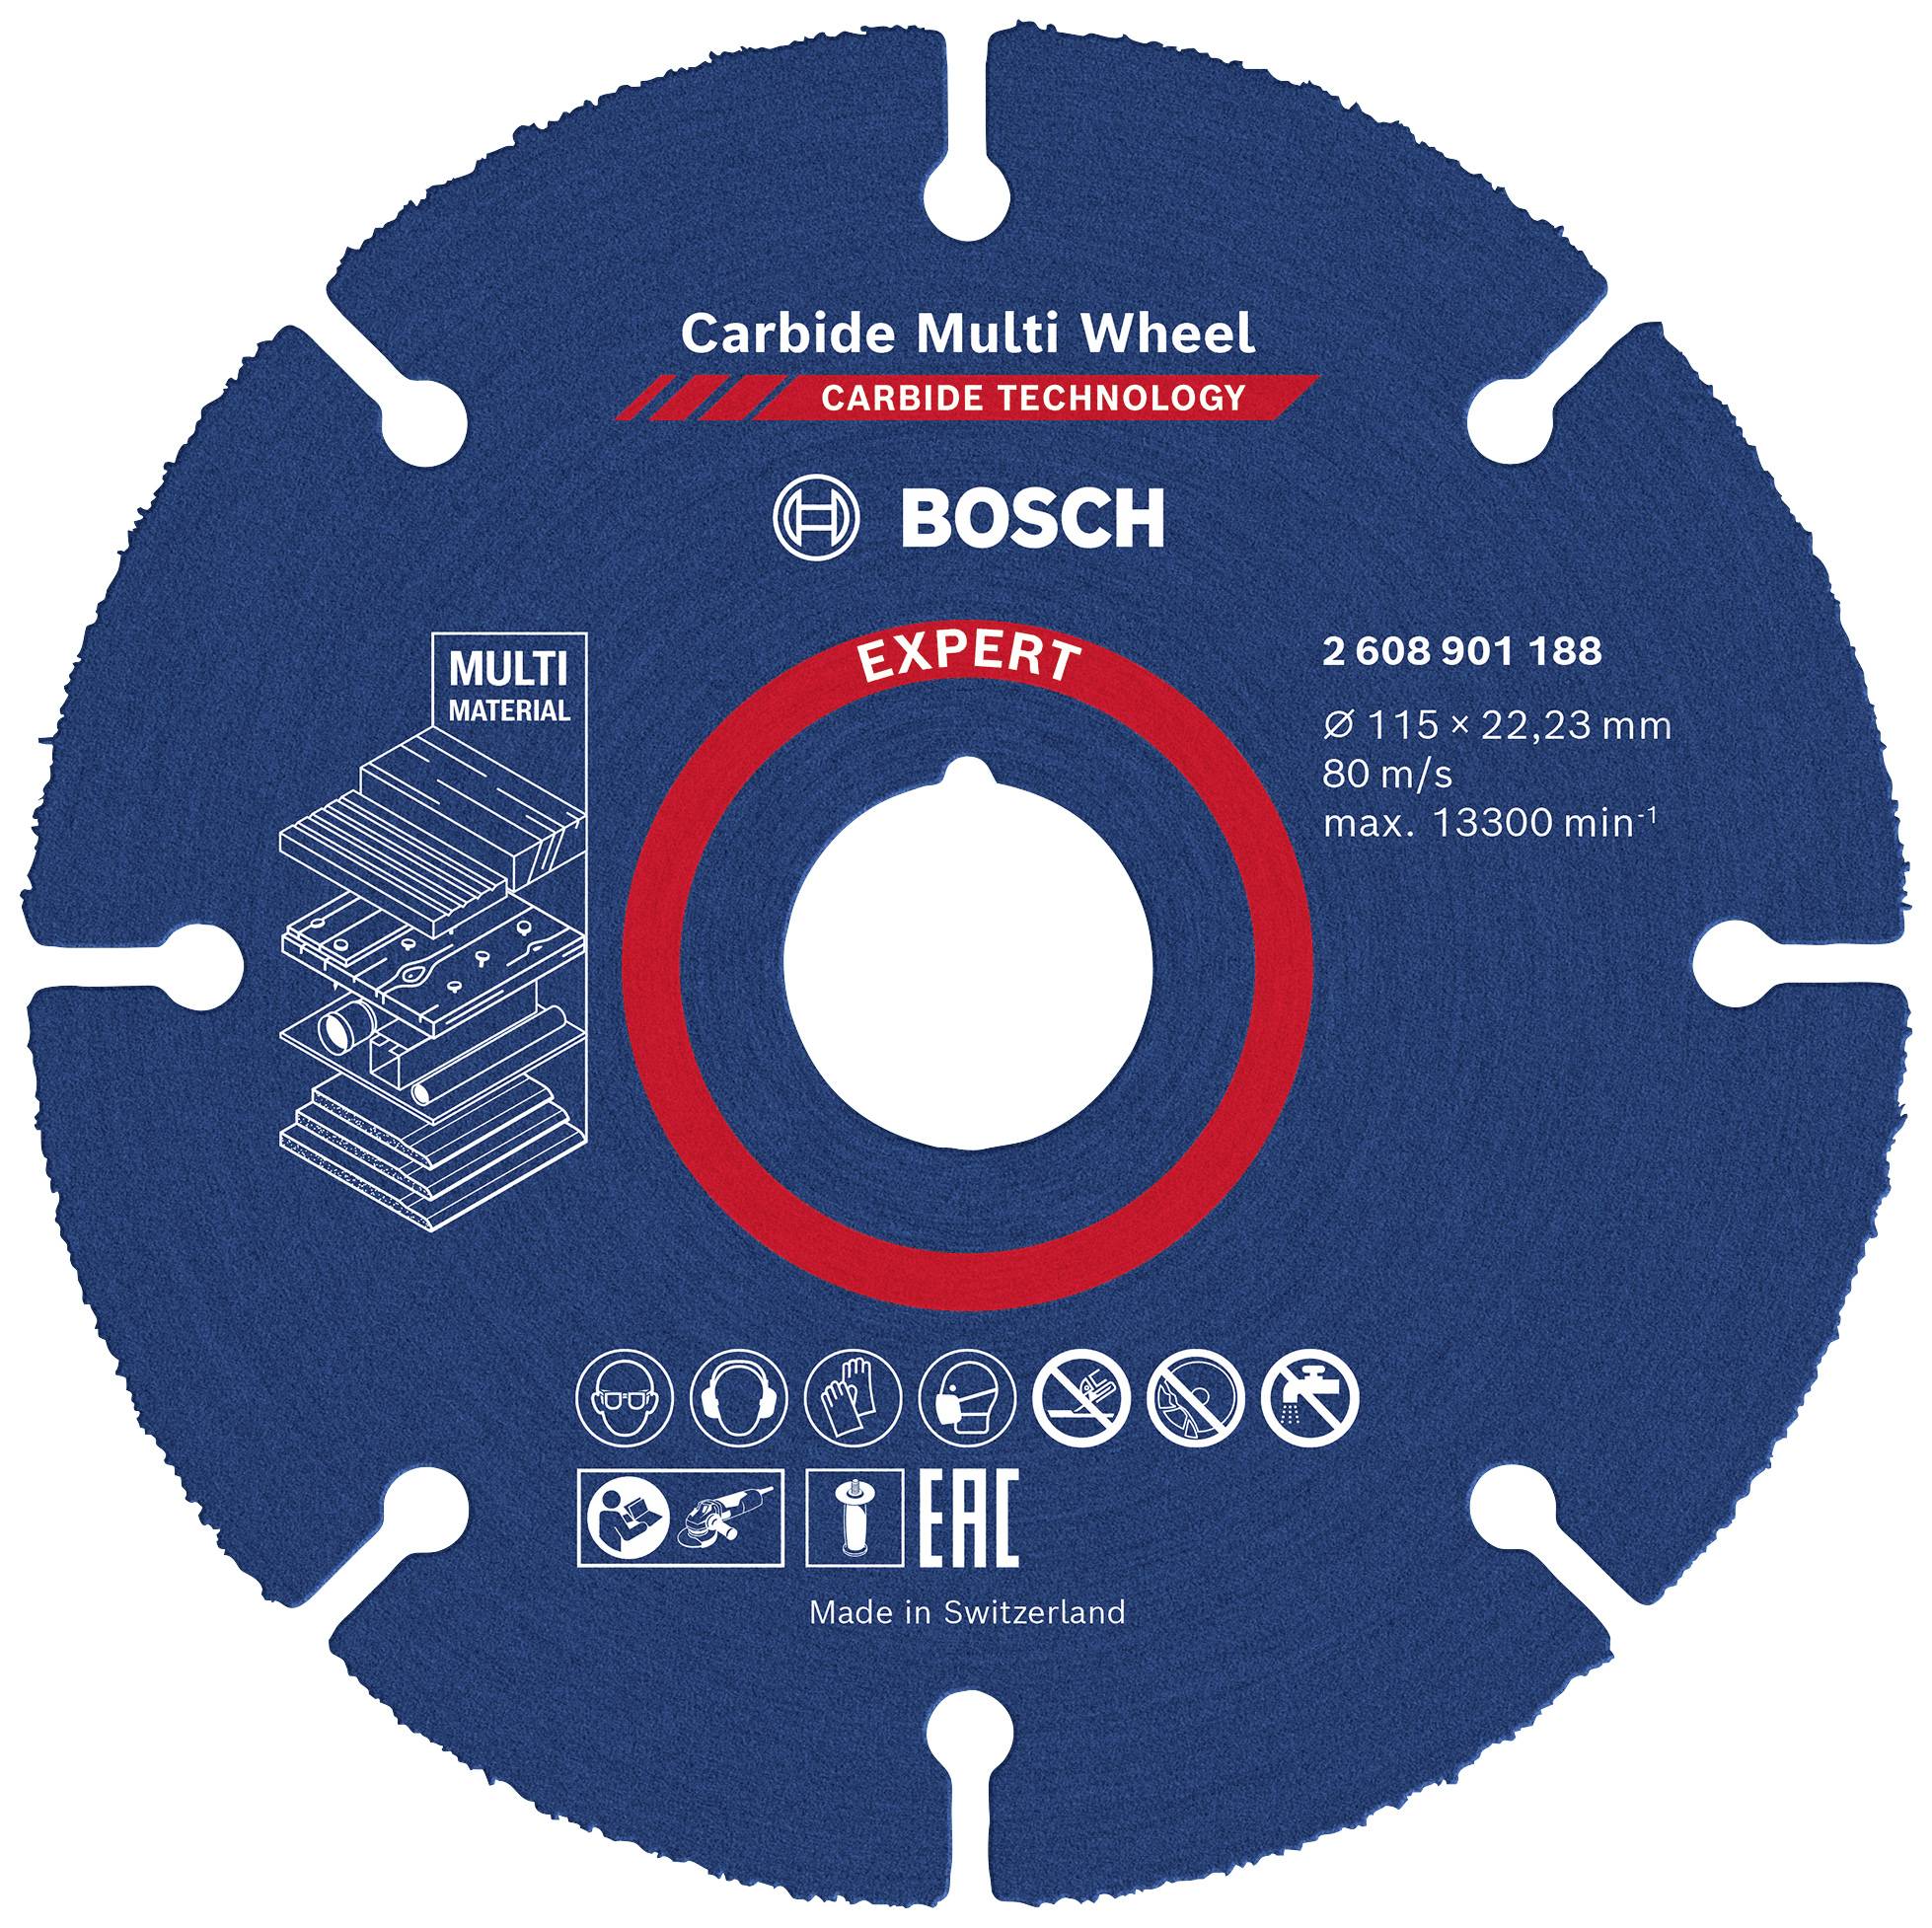 Bosch Carbide Multi Material Cutting Disc 115 x 22.23mm 